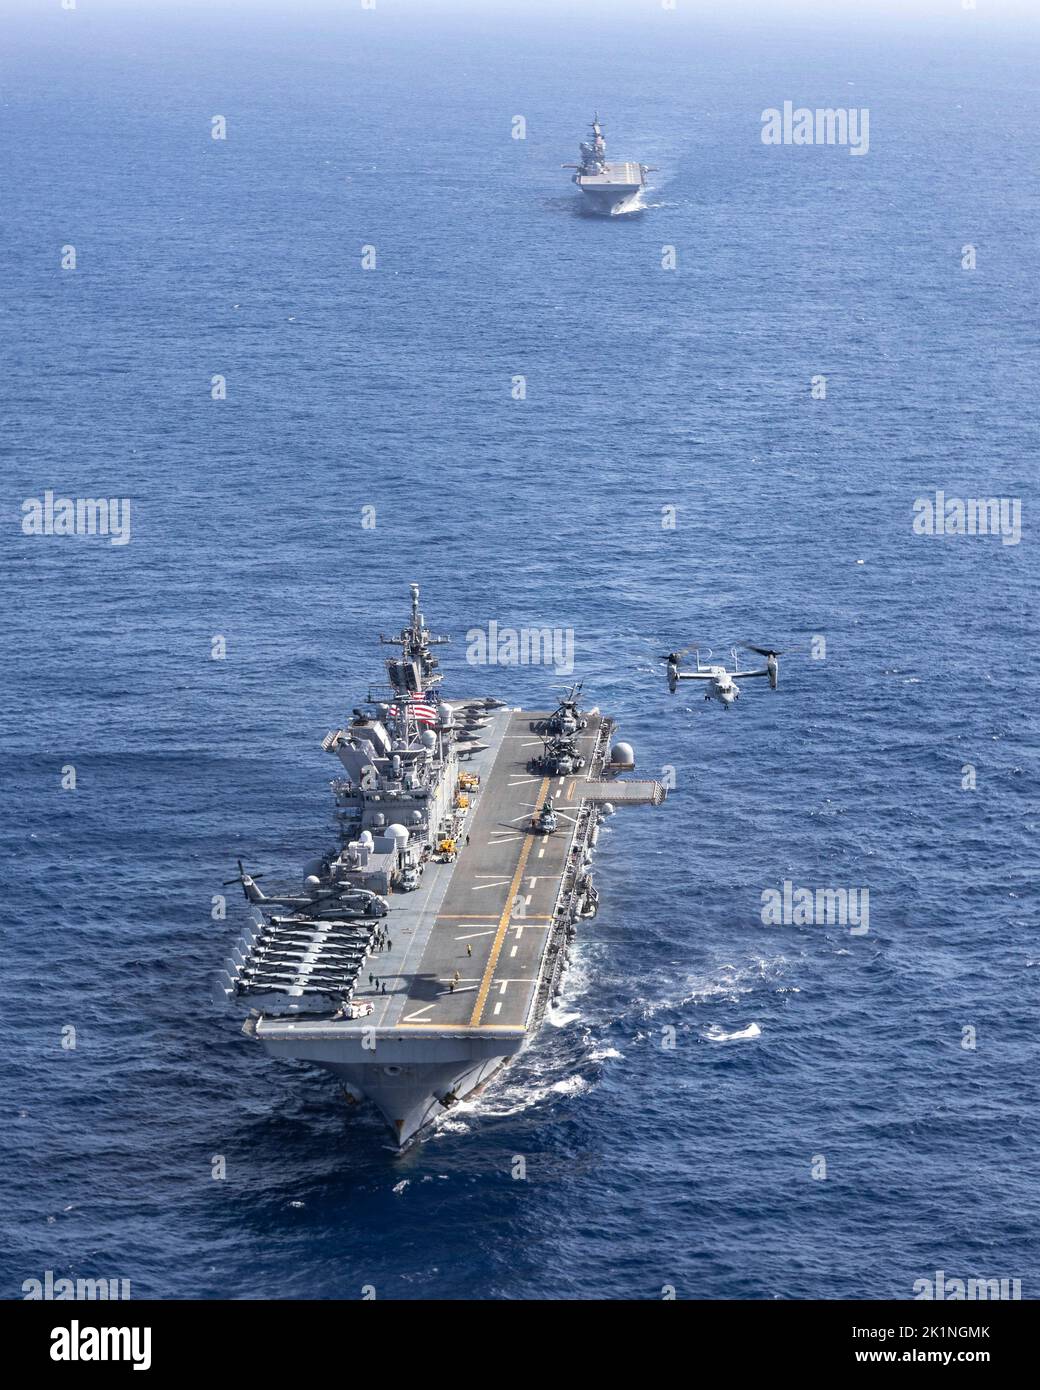 Mar de Filipinas, Estados Unidos. 17 de septiembre de 2022. Un avión MV-22B Osprey del Cuerpo de Marines de EE.UU. Despega del buque de asalto anfibio USS Trípoli de clase americana de la Marina de los EE.UU., abajo, mientras navega con el buque de asalto anfibio USS América durante una operación de entrenamiento, el 17 de septiembre de 2022 en el Mar de Filipinas. Crédito: LCPL. Christopher Lape/EE.UU Marines Photo/Alamy Live News Foto de stock